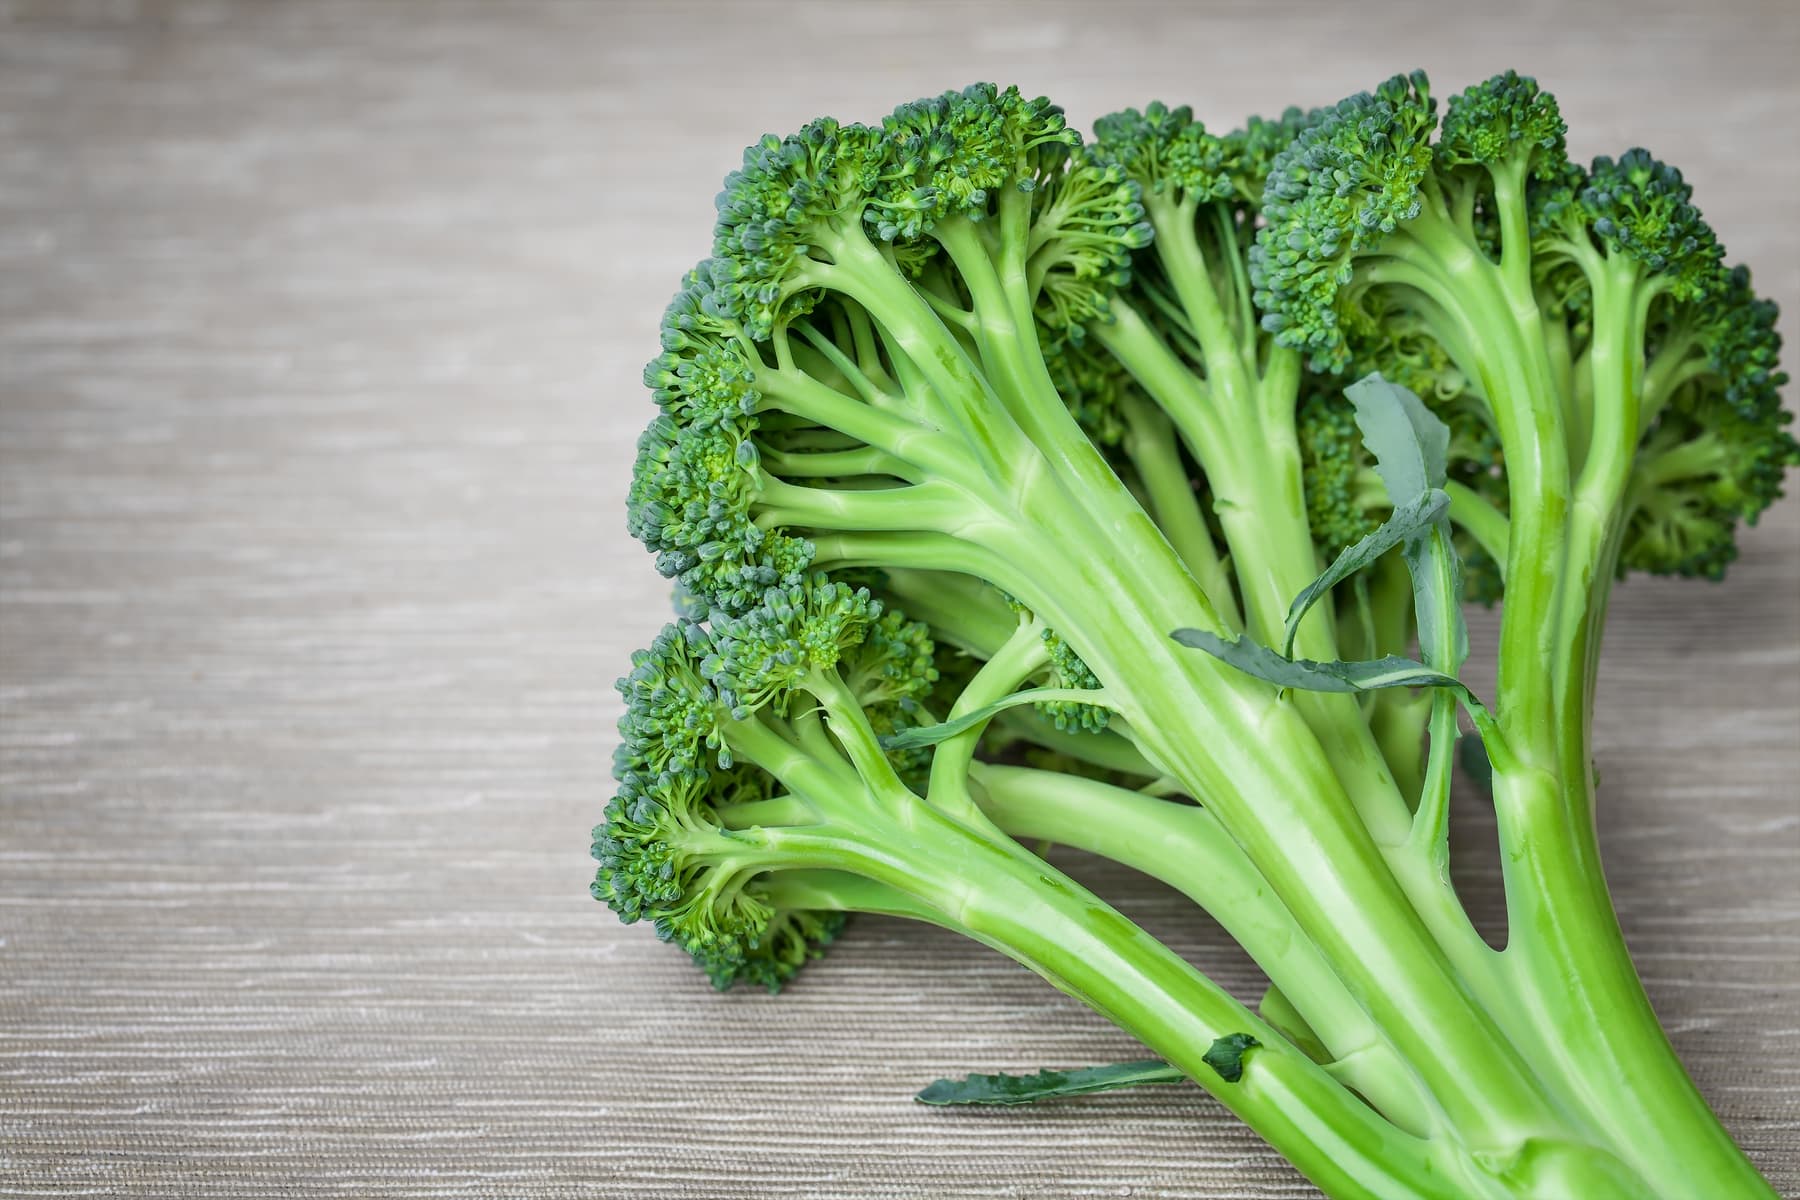  broccoli stalks